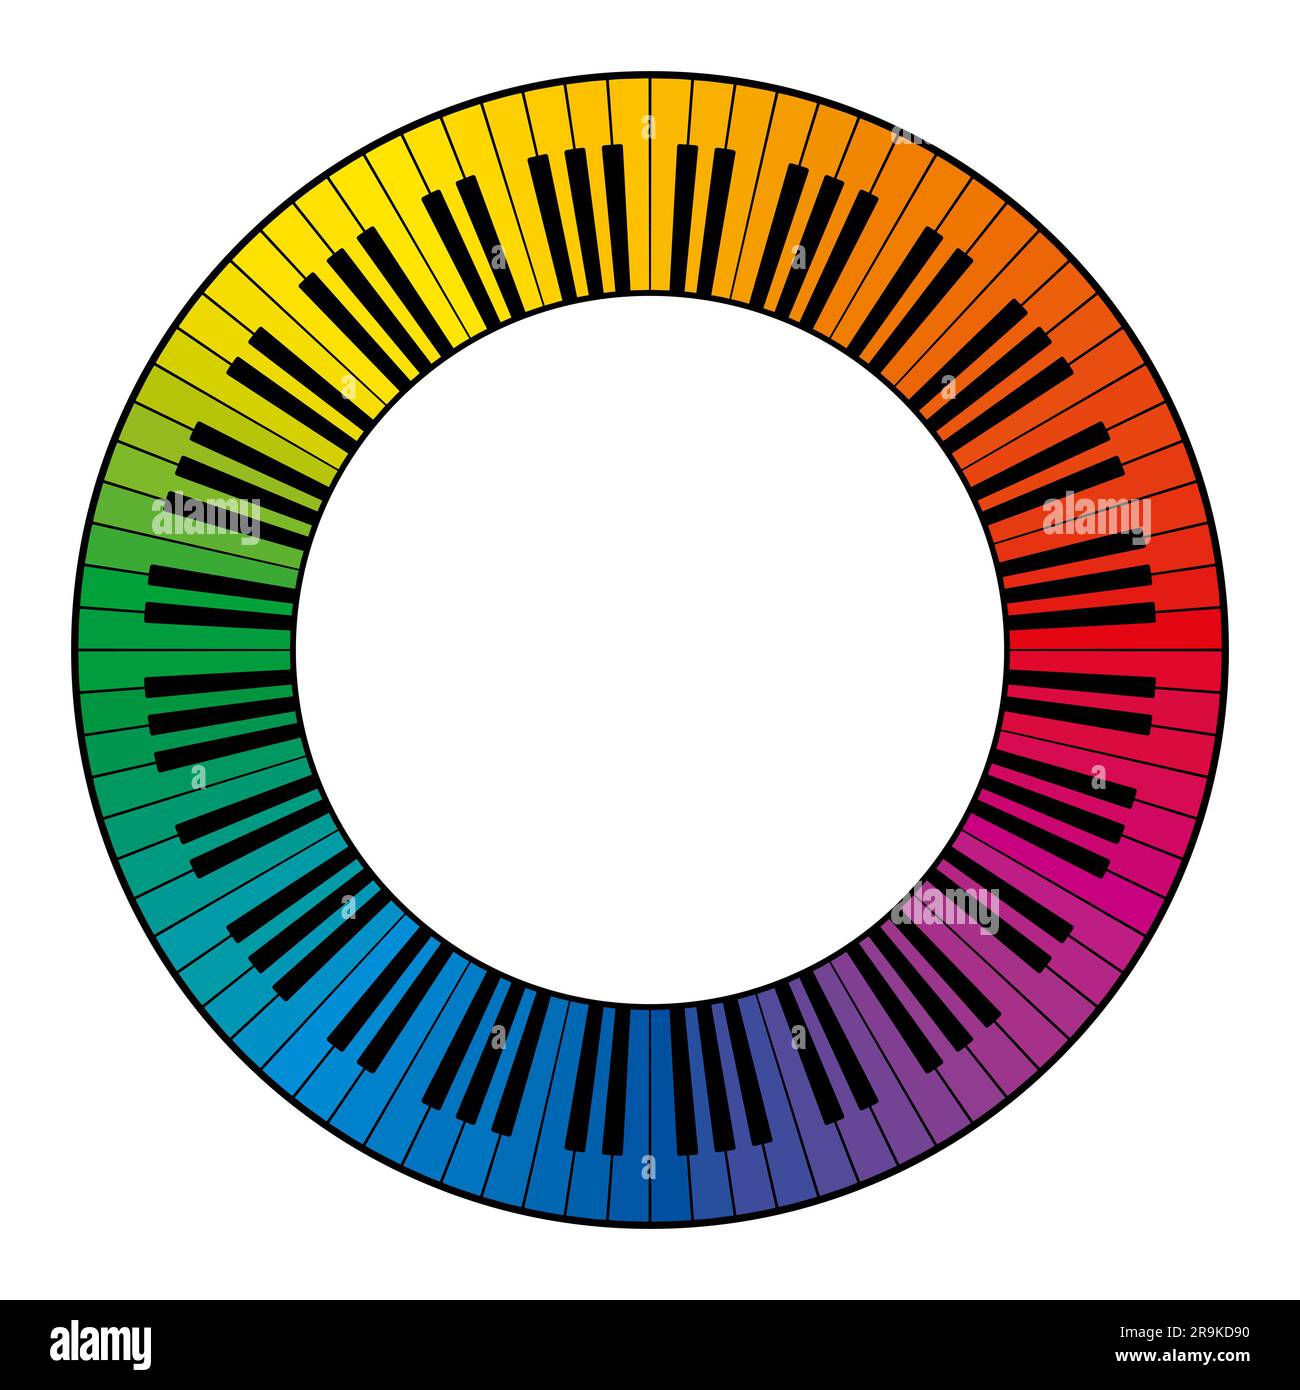 Musiktastatur, kreisförmiger Rahmen, mit zwölf Oktaven regenbogenfarbenen Tasten. Dekorativer Rahmen, bestehend aus mehrfarbigen Tasten einer Klaviertastatur Stockfoto